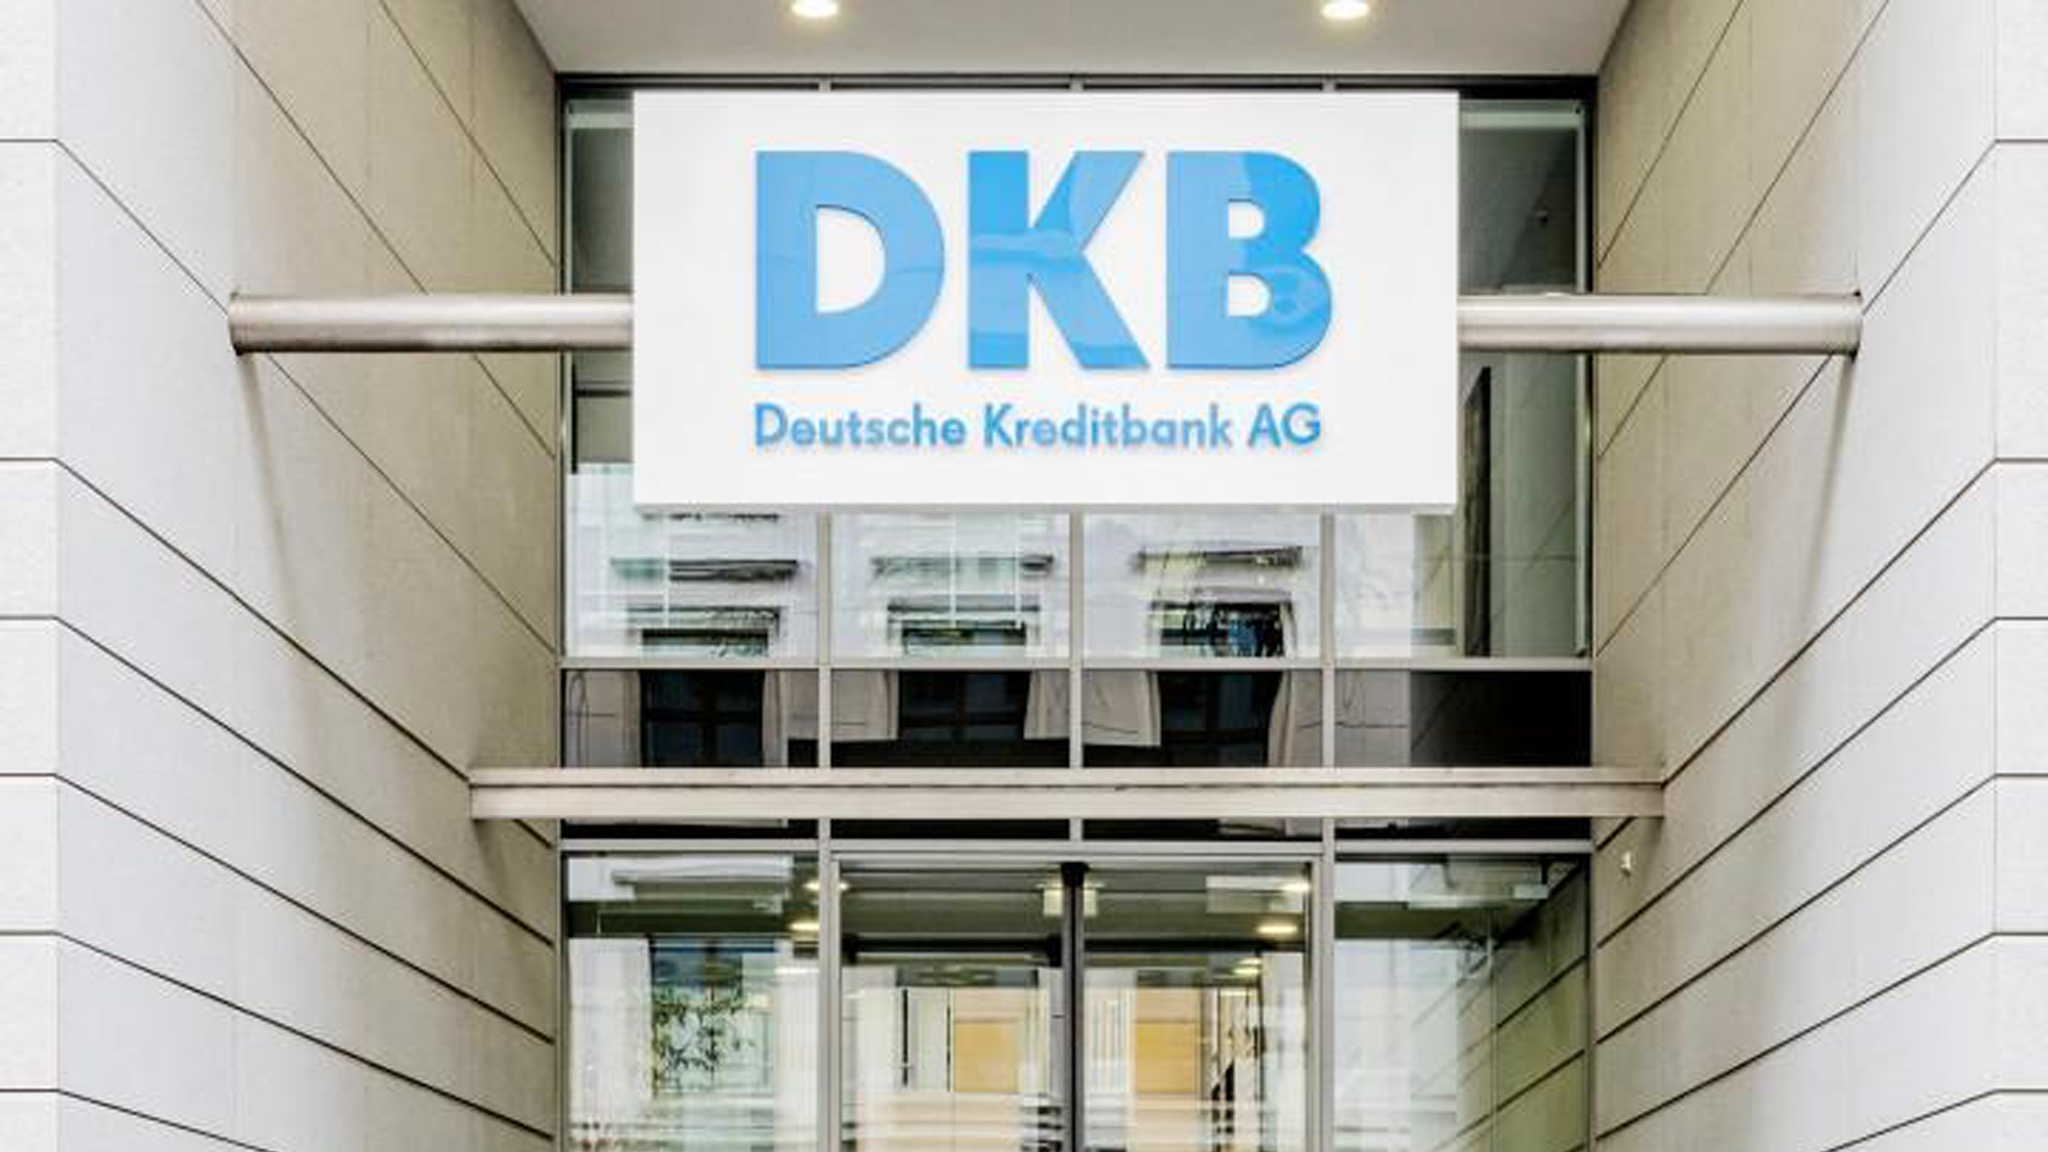 Vorher noch zugreifen? DKB senkt Festgeld-Zinsen zum 2.April